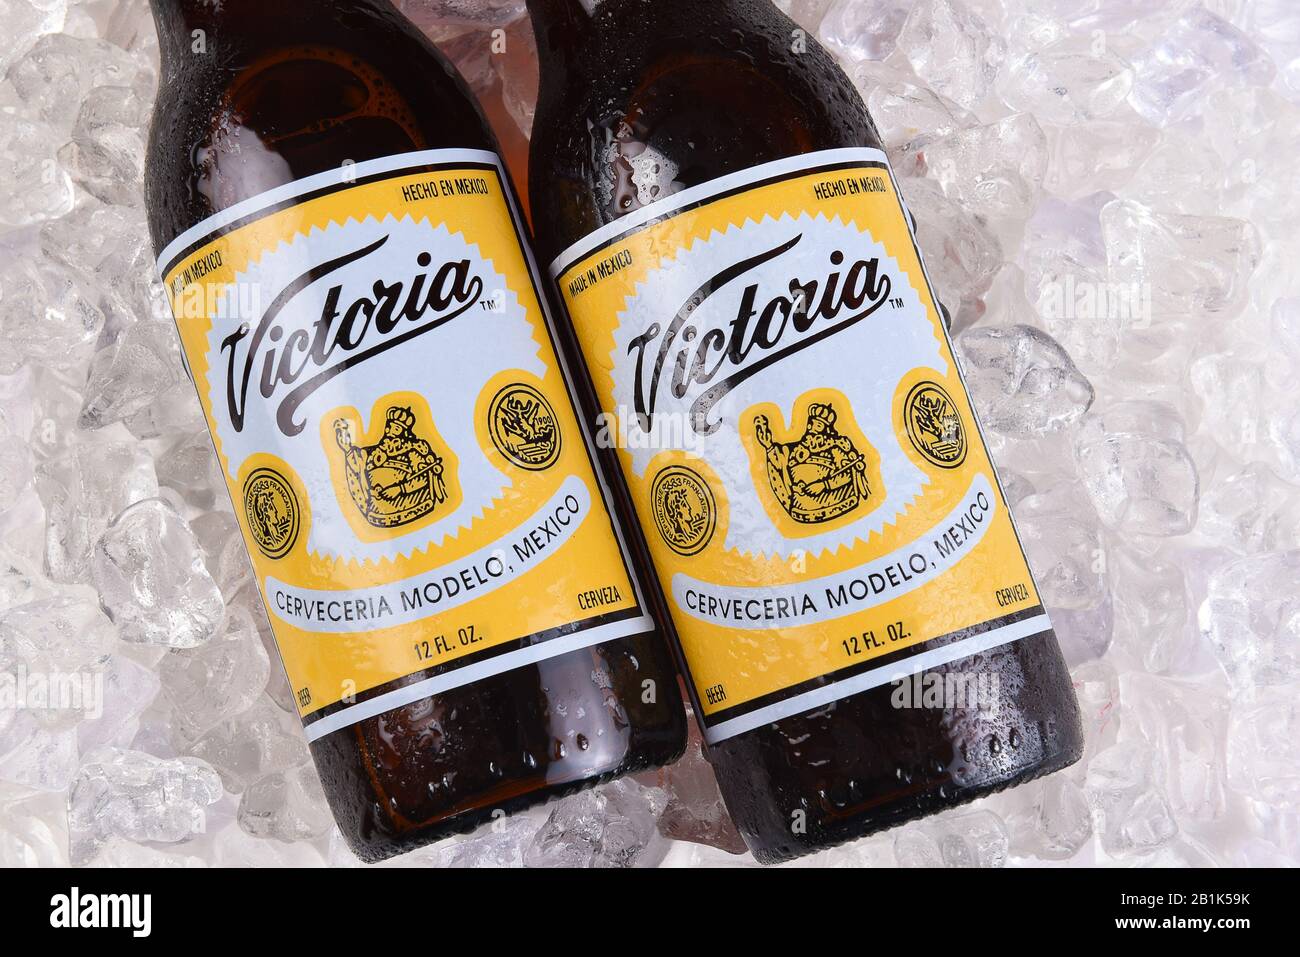 Irvine, CALIFORNIA - 21 DE MARZO de 2018: Dos botellas de cerveza Victoria  sobre hielo. La Marca